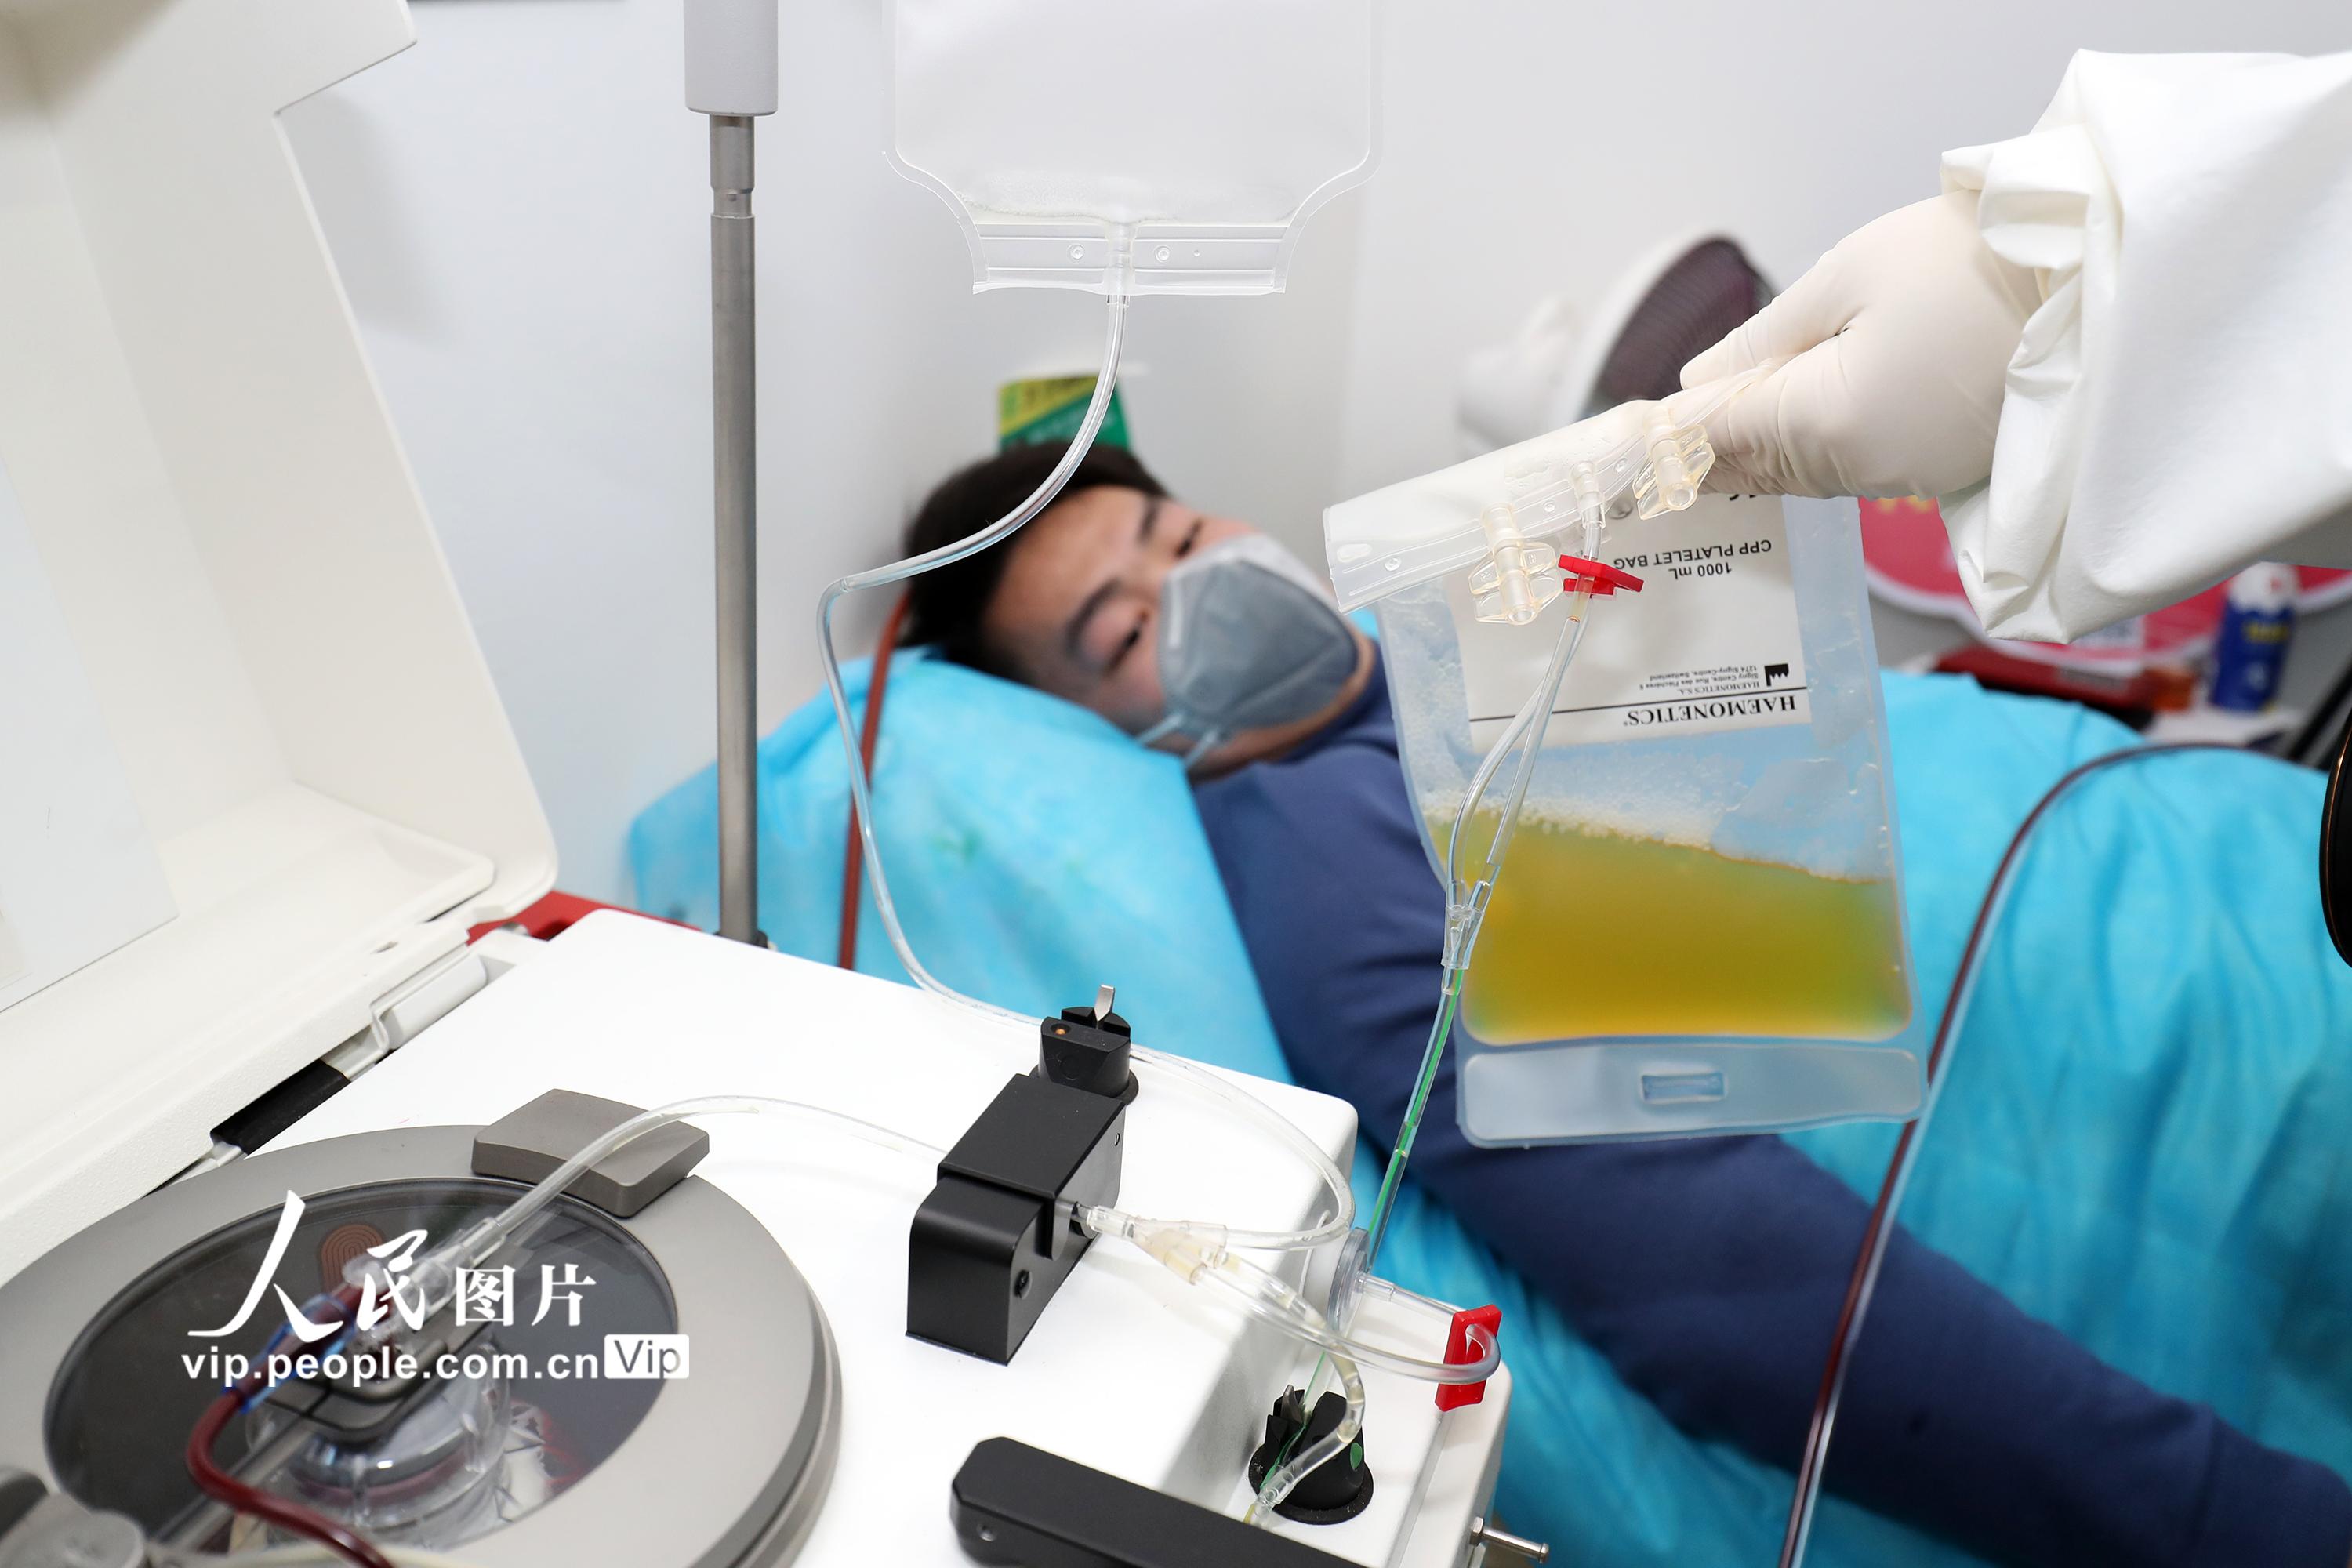 湖南衡陽首批新冠肺炎康復者捐獻帶抗體血漿